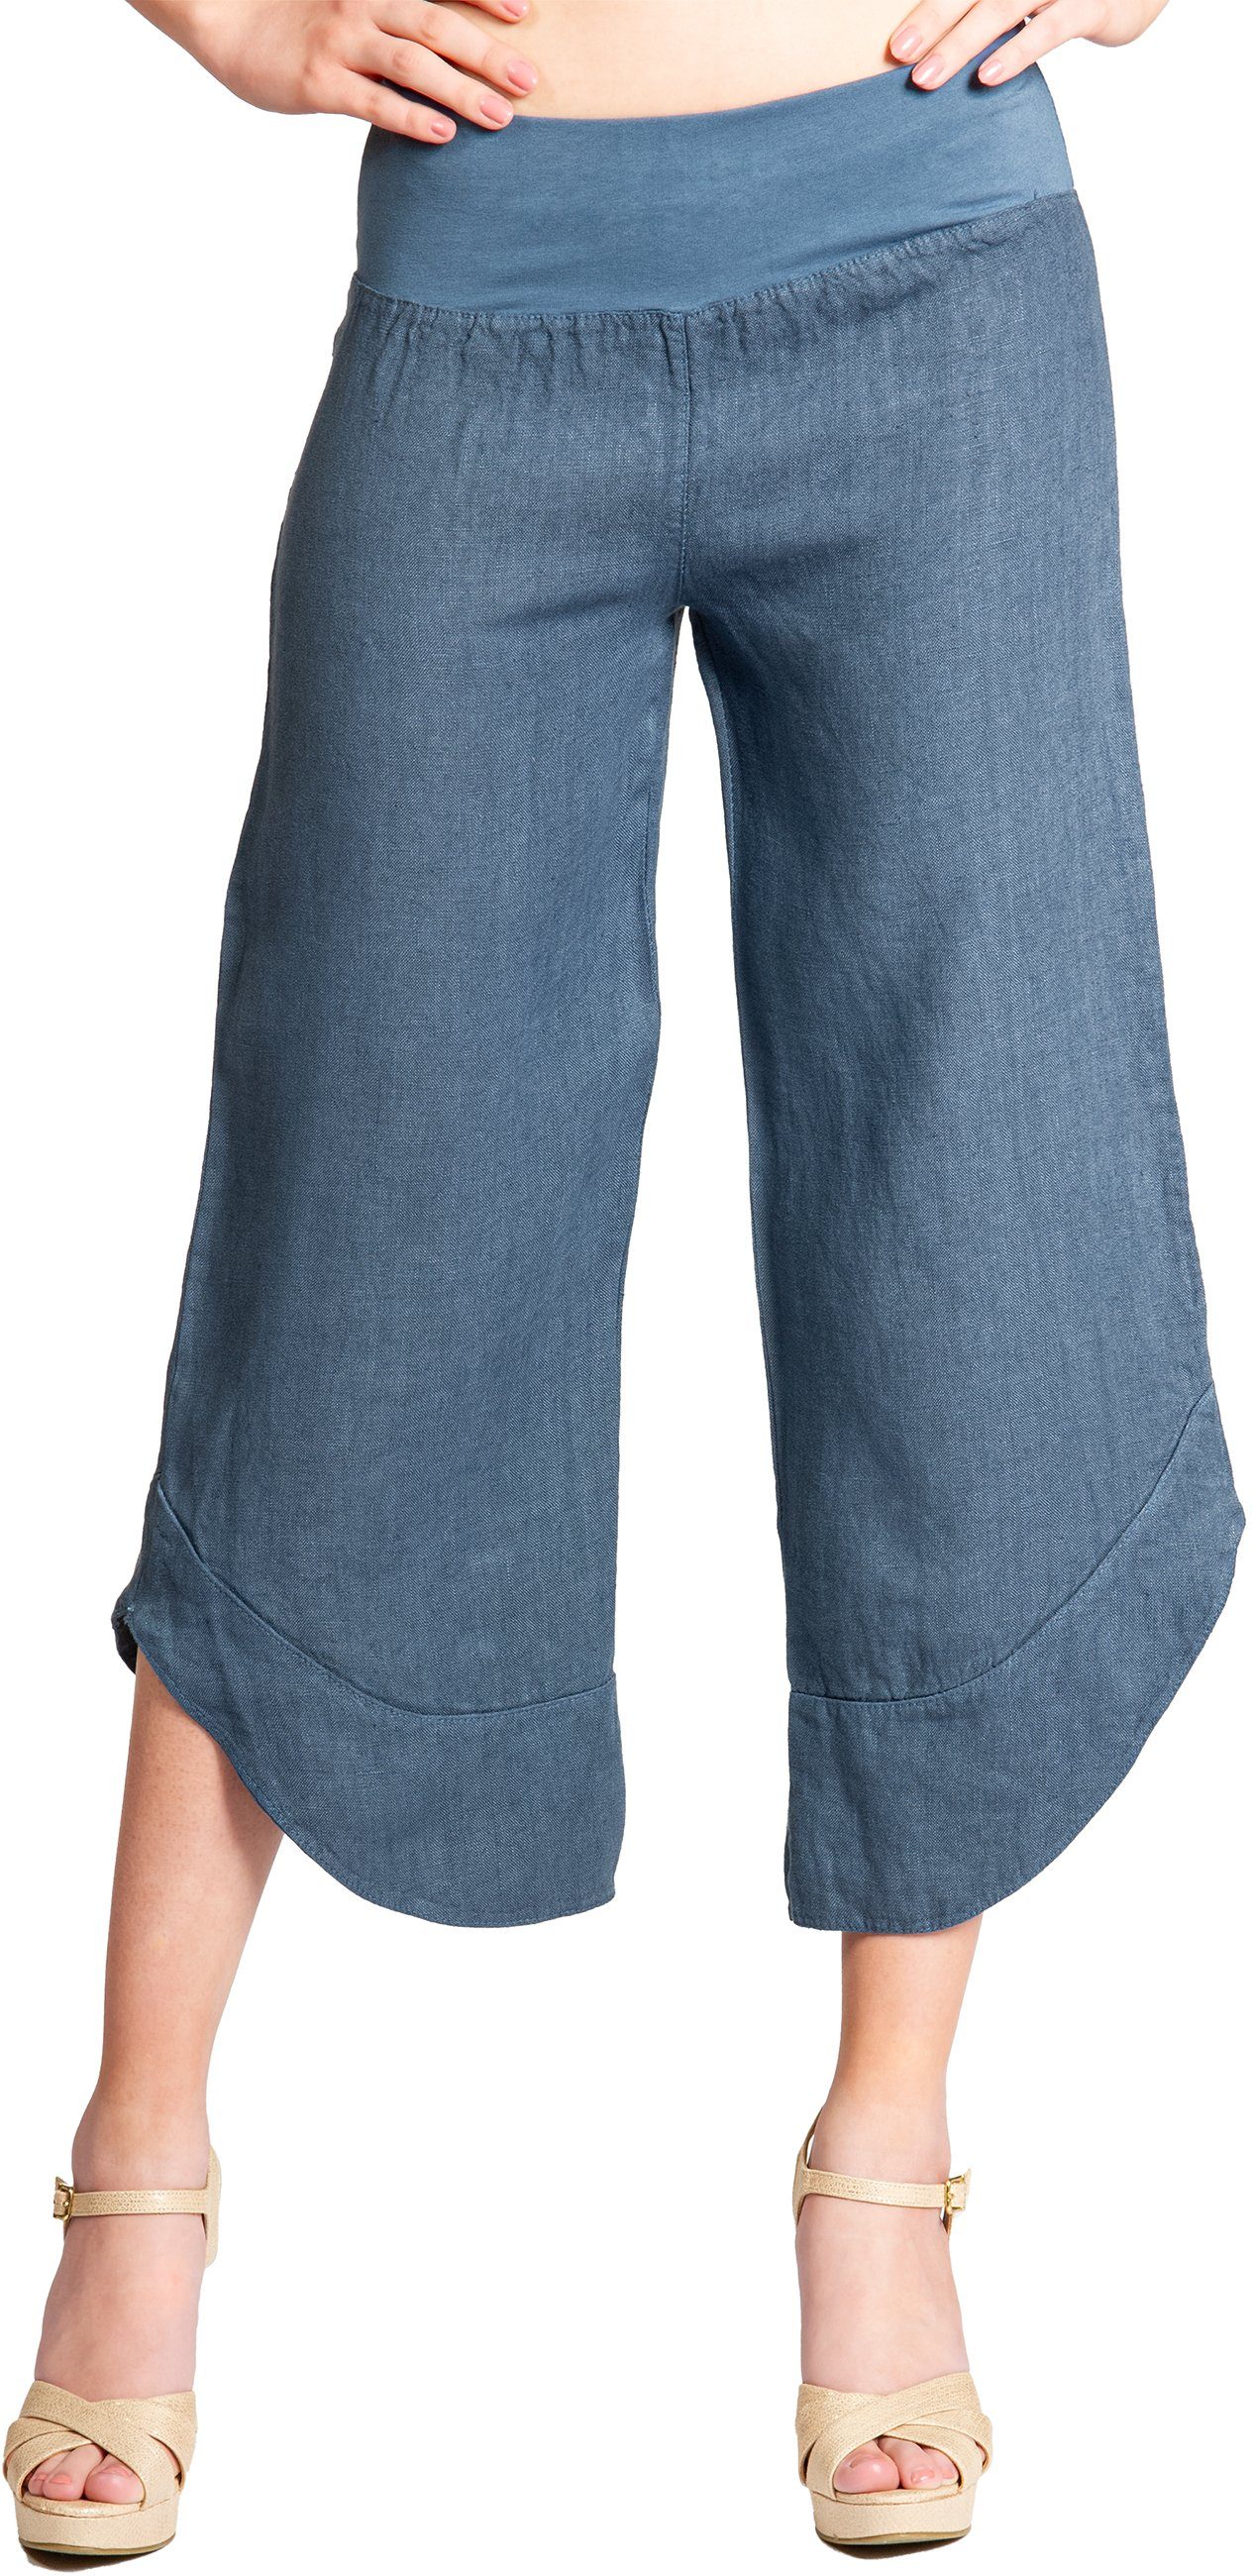 Caspar Leinenhose KHS052 Damen 3/4 Capri Hose aus robustem Leinen jeans blau | Leinenhosen